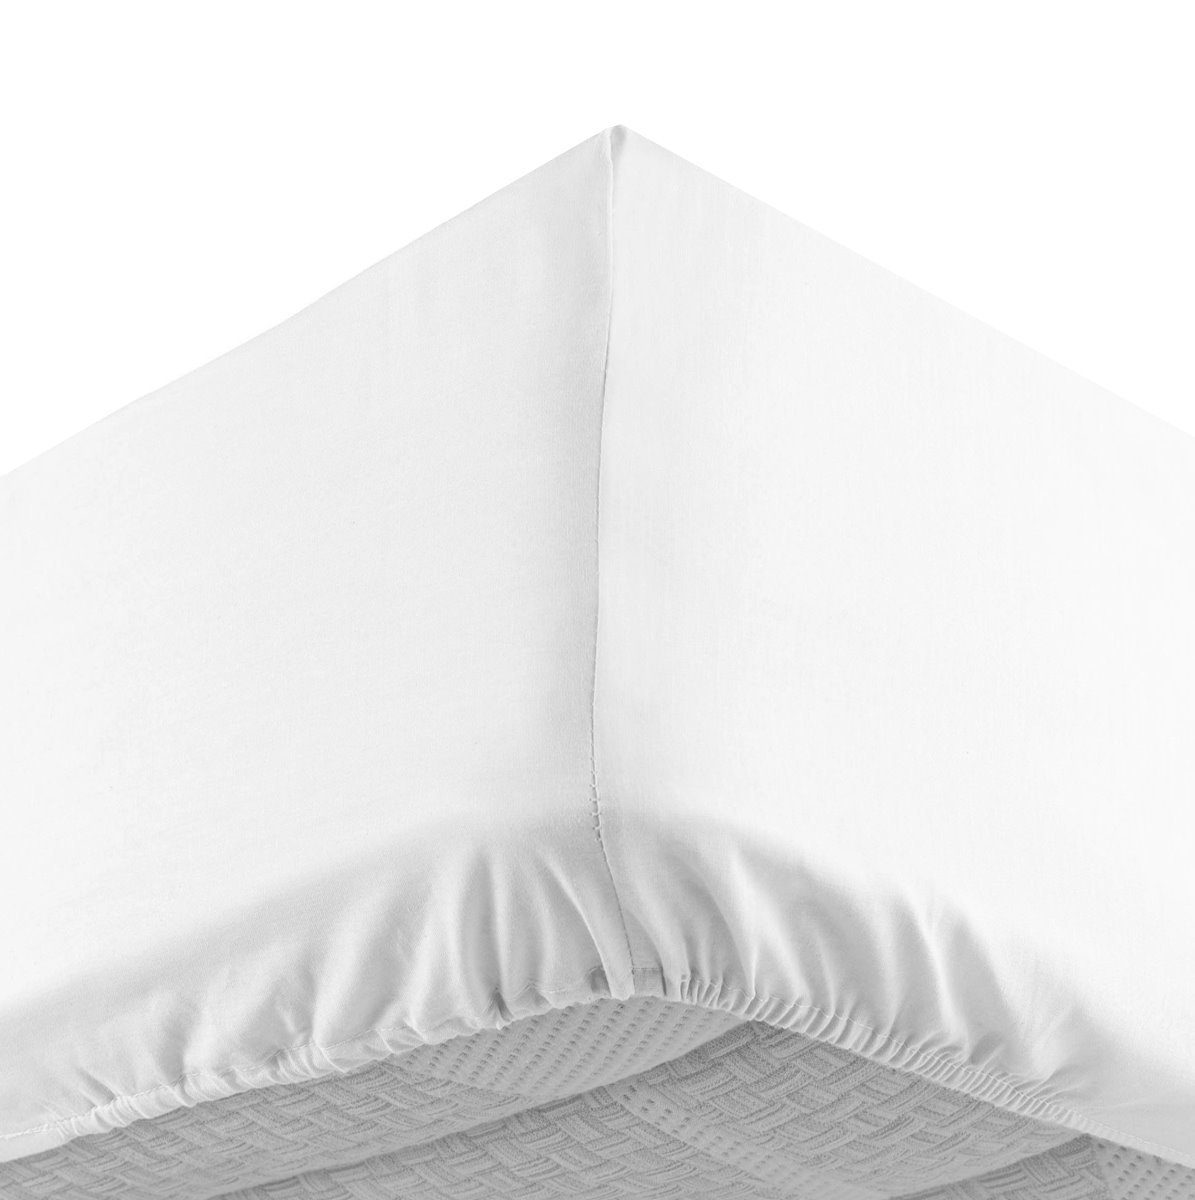 Spannbettlaken »35cm für dicke Matratzen«, dynamic24 (1 St), 90x200  Bettlaken Jersey Baumwolle Bett Laken Spannbetttuch weiß